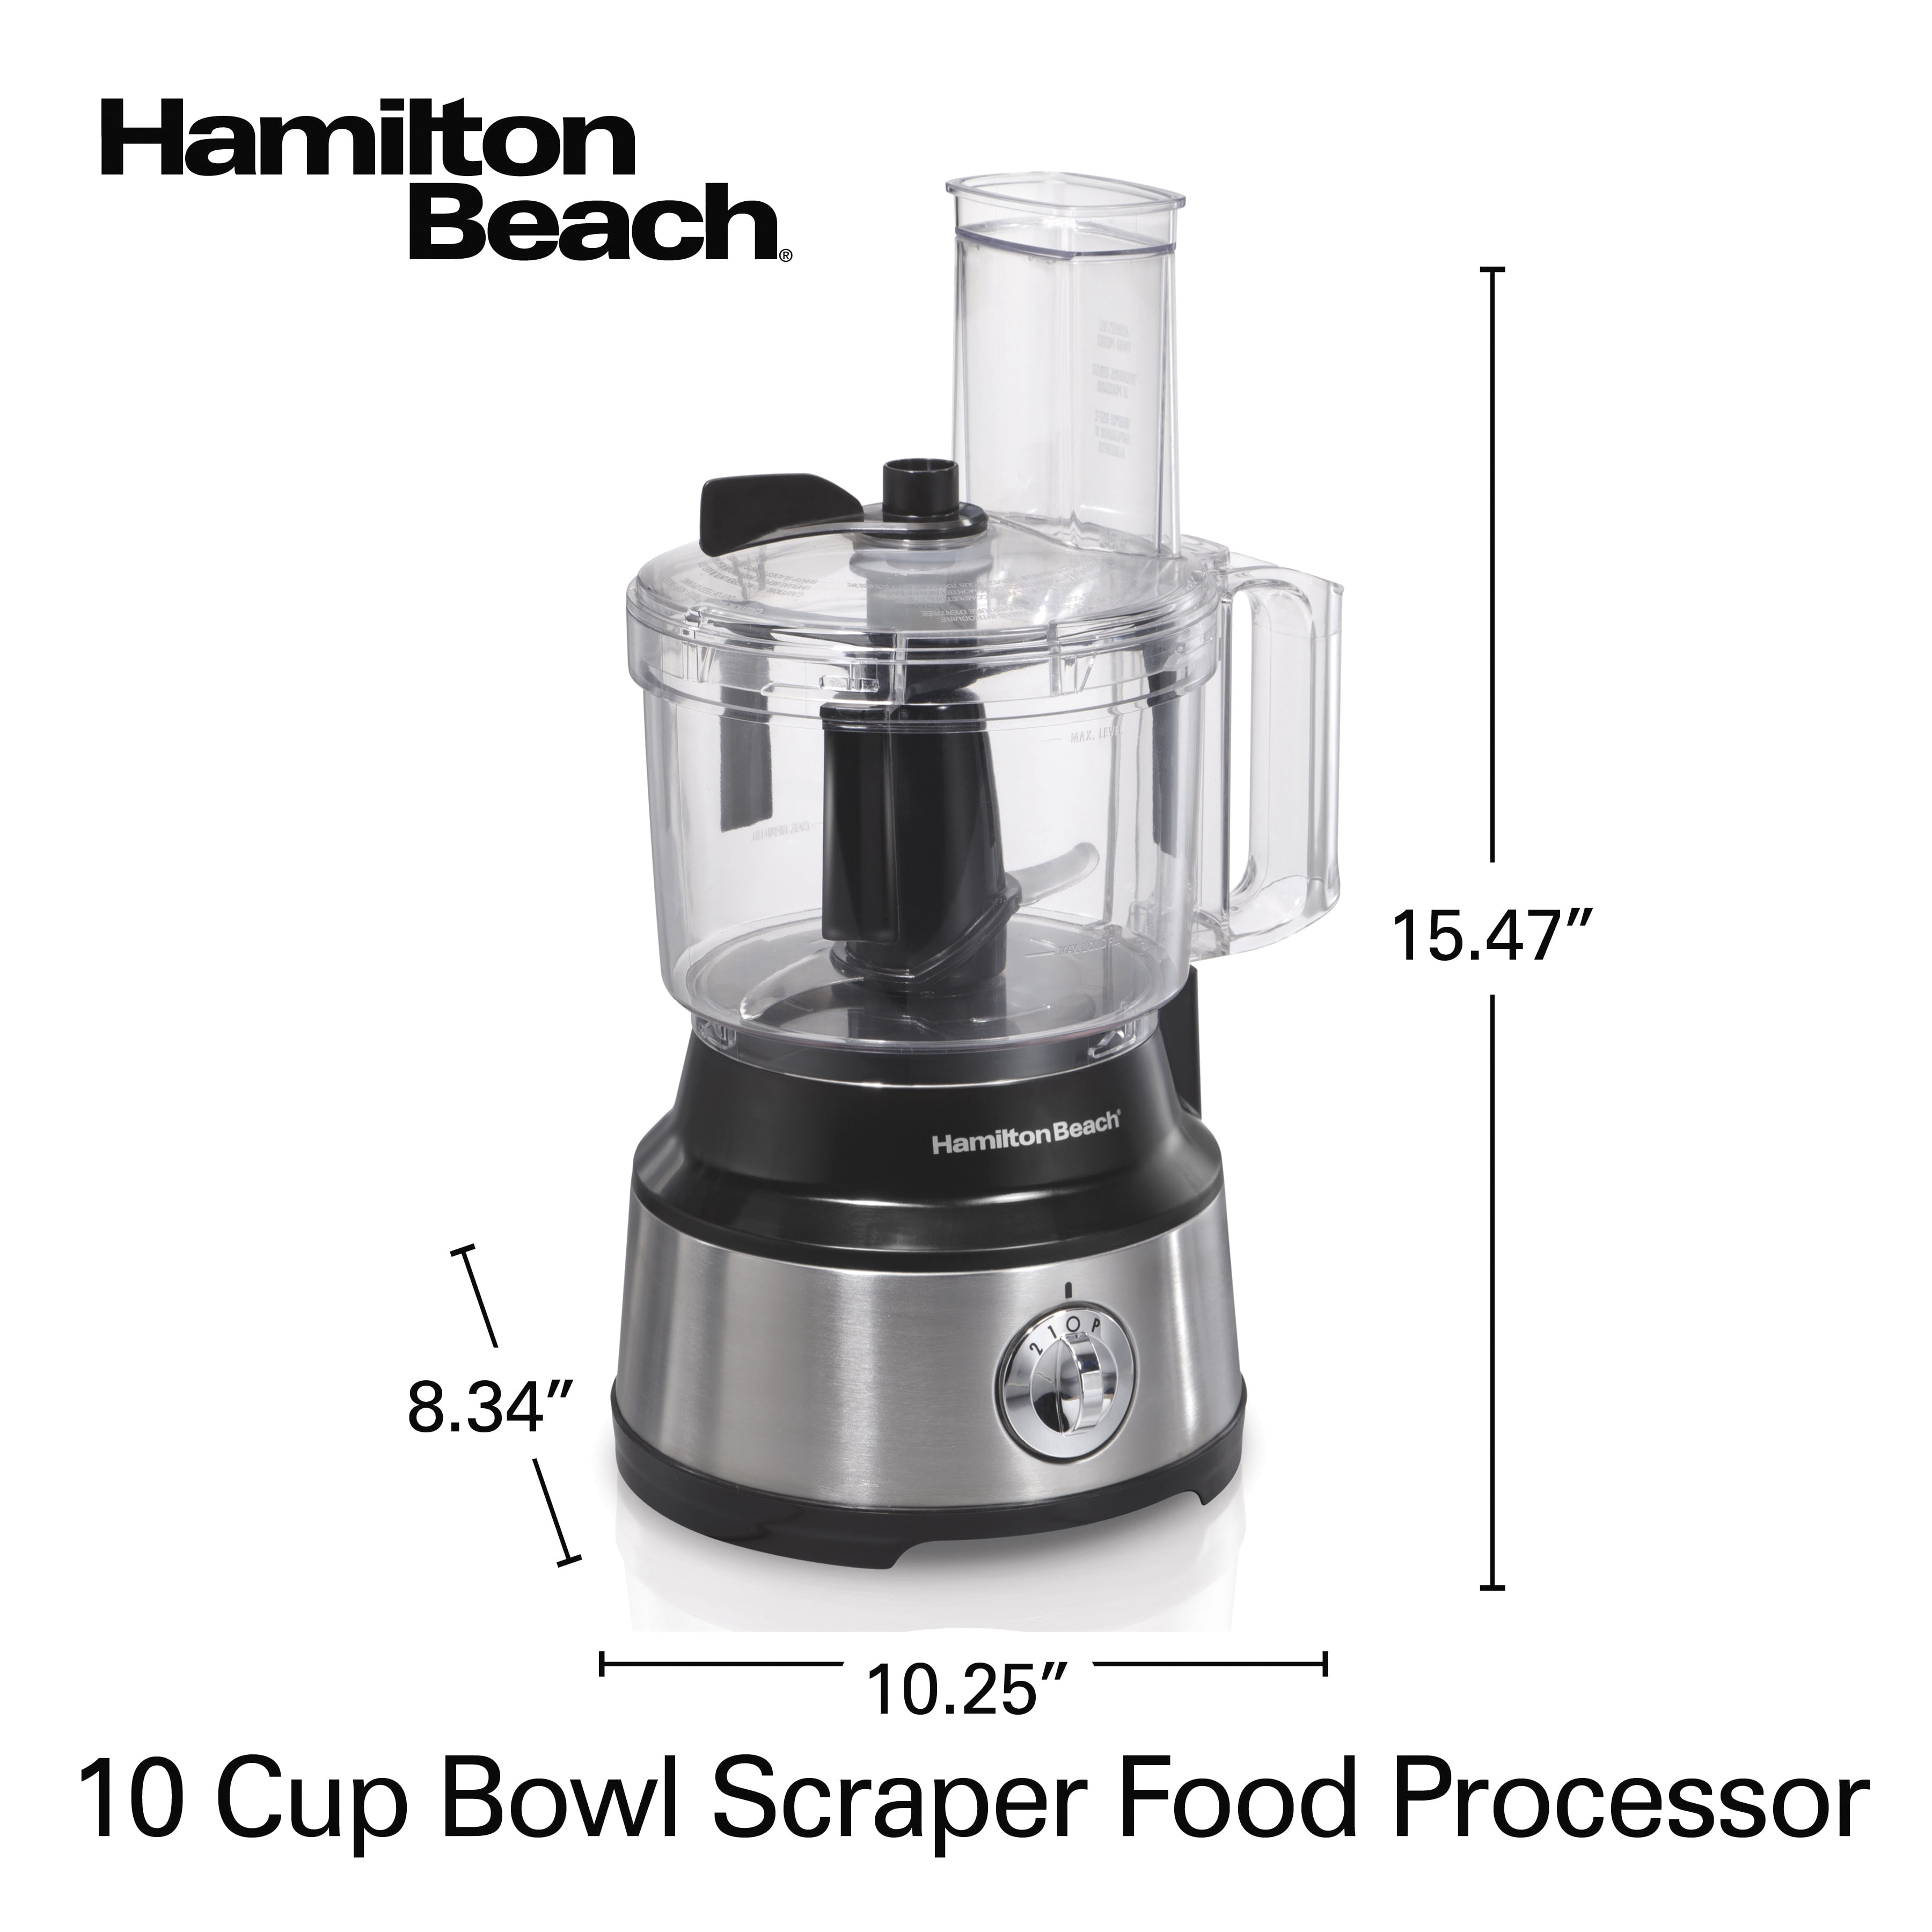 Hamilton Beach Bowl Scraper 10 Cup Food Processor review